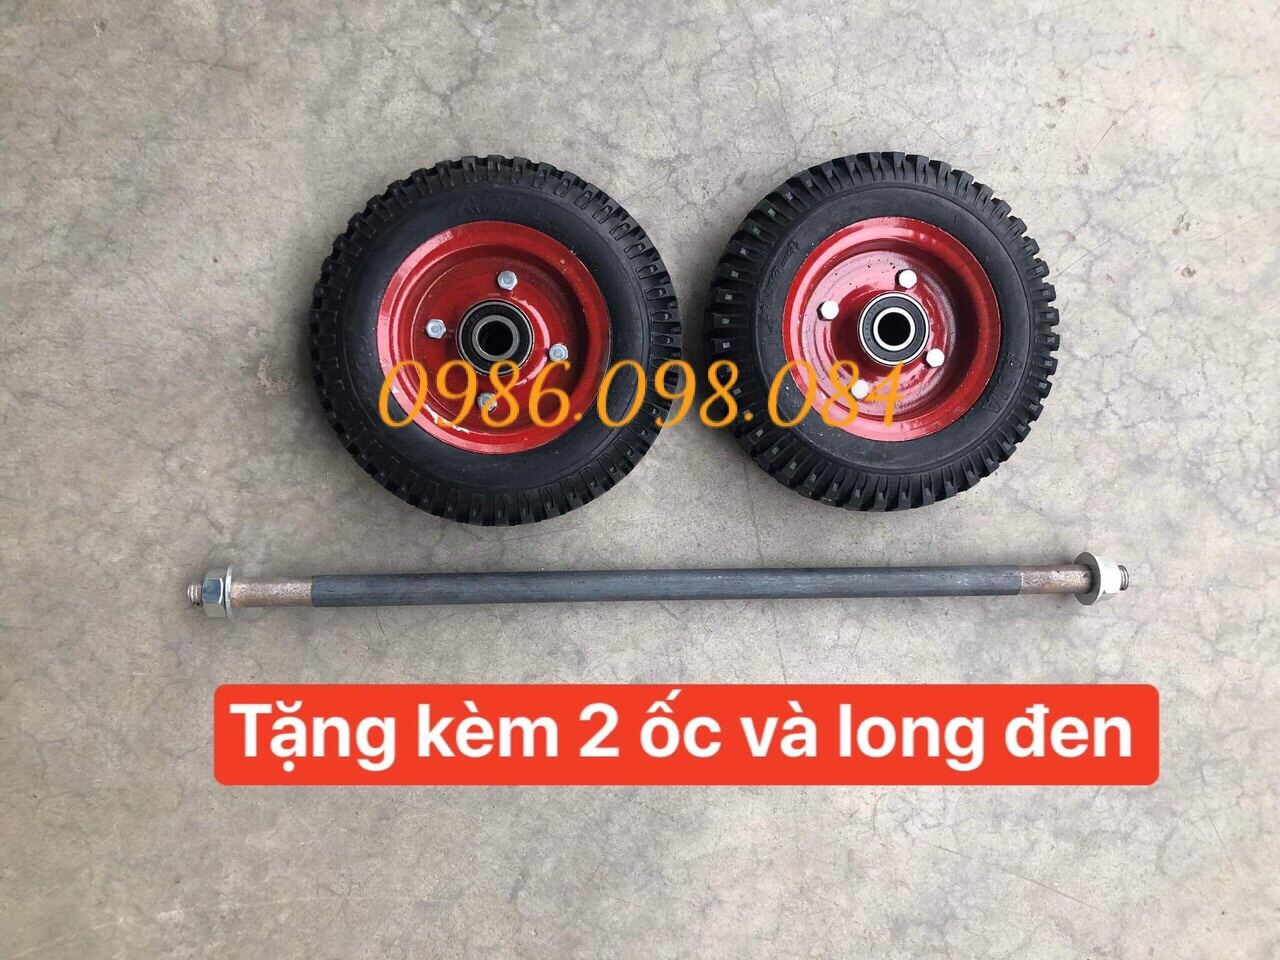 Bảng giá 2 bánh xe đẩy đường kính 20cm kèm trục bánh xe 17ly dùng để thay thế và chế tạo xe đẩy hàng